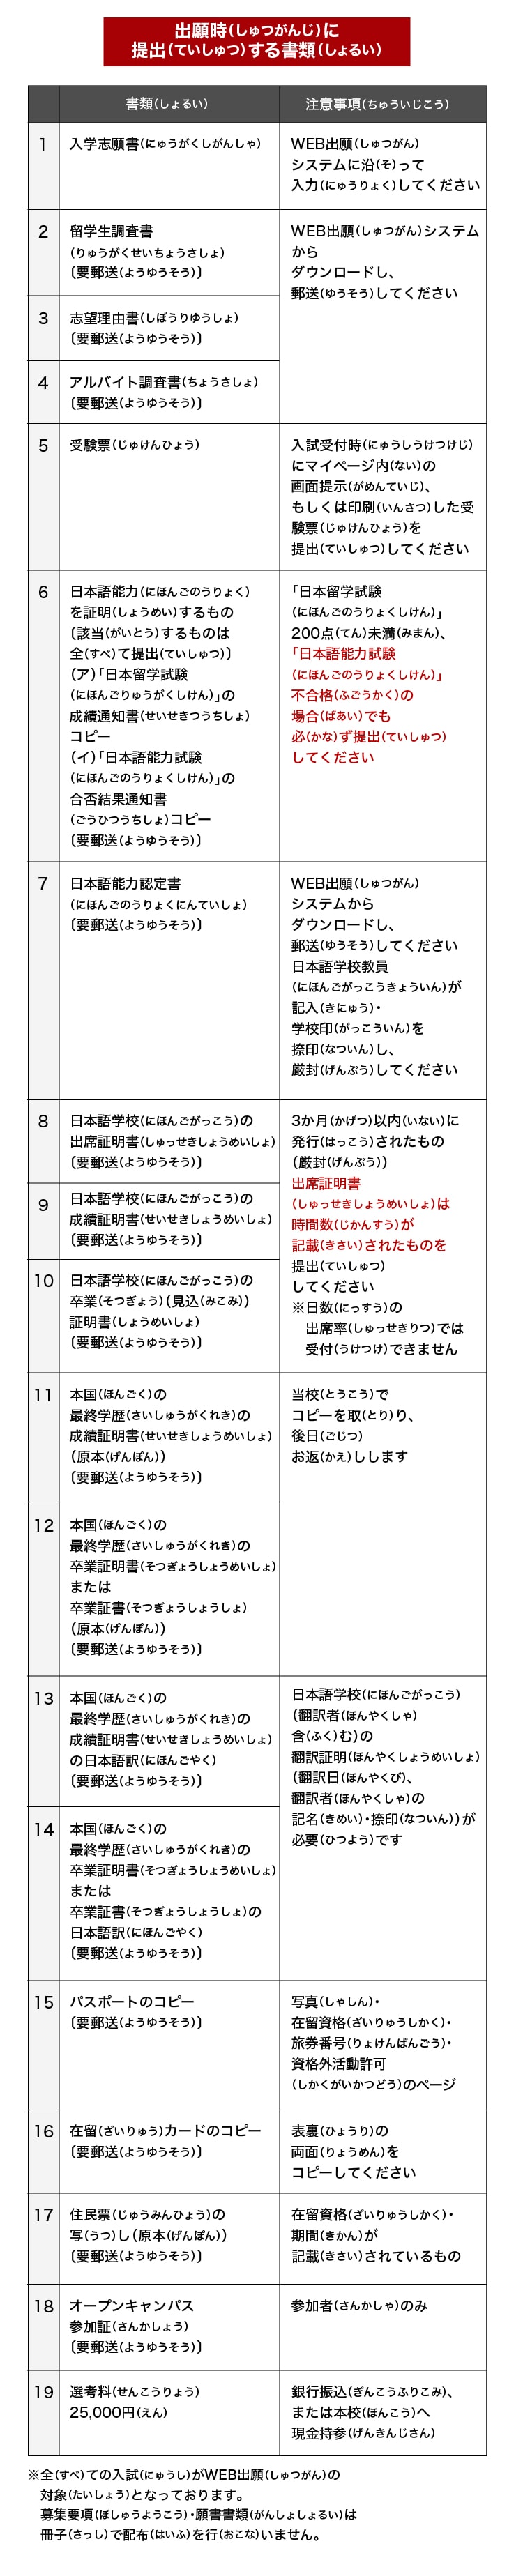 HITの特徴 日本語コミュニケーション学科募集要項